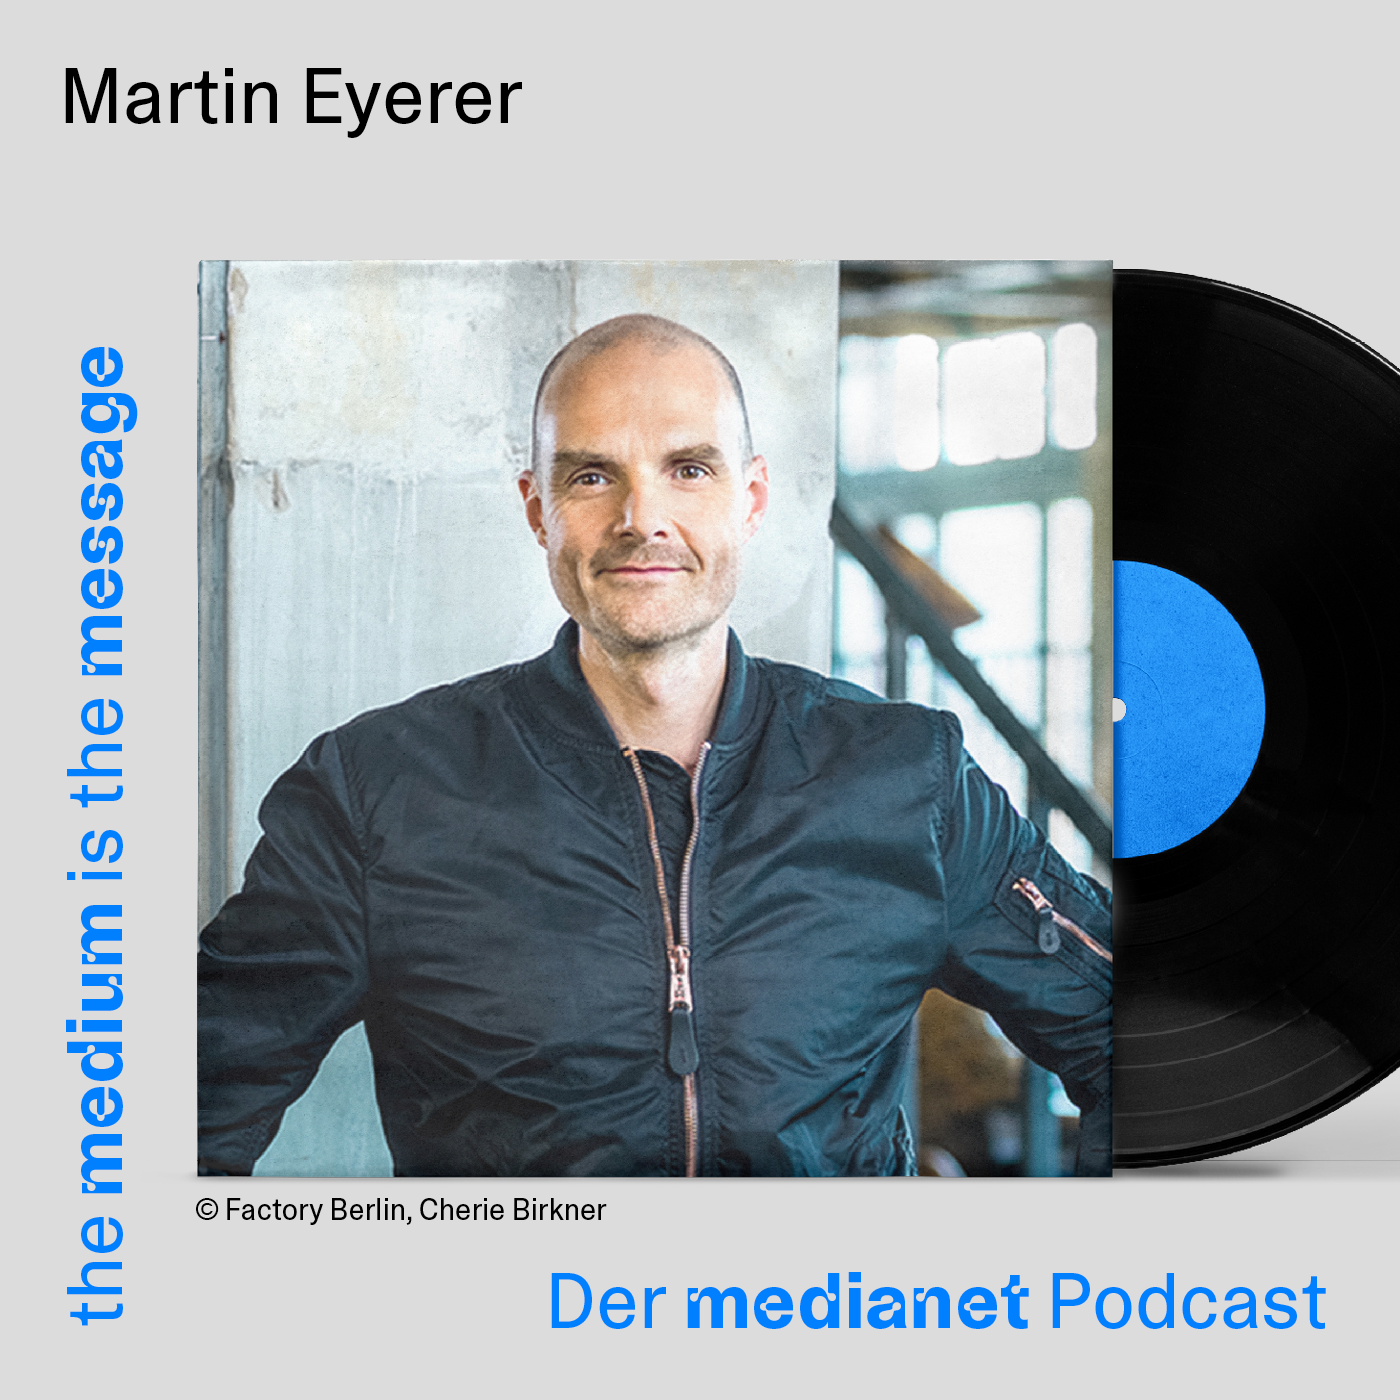 Martin Eyerer - Wie baust du nachhaltige Netzwerke?